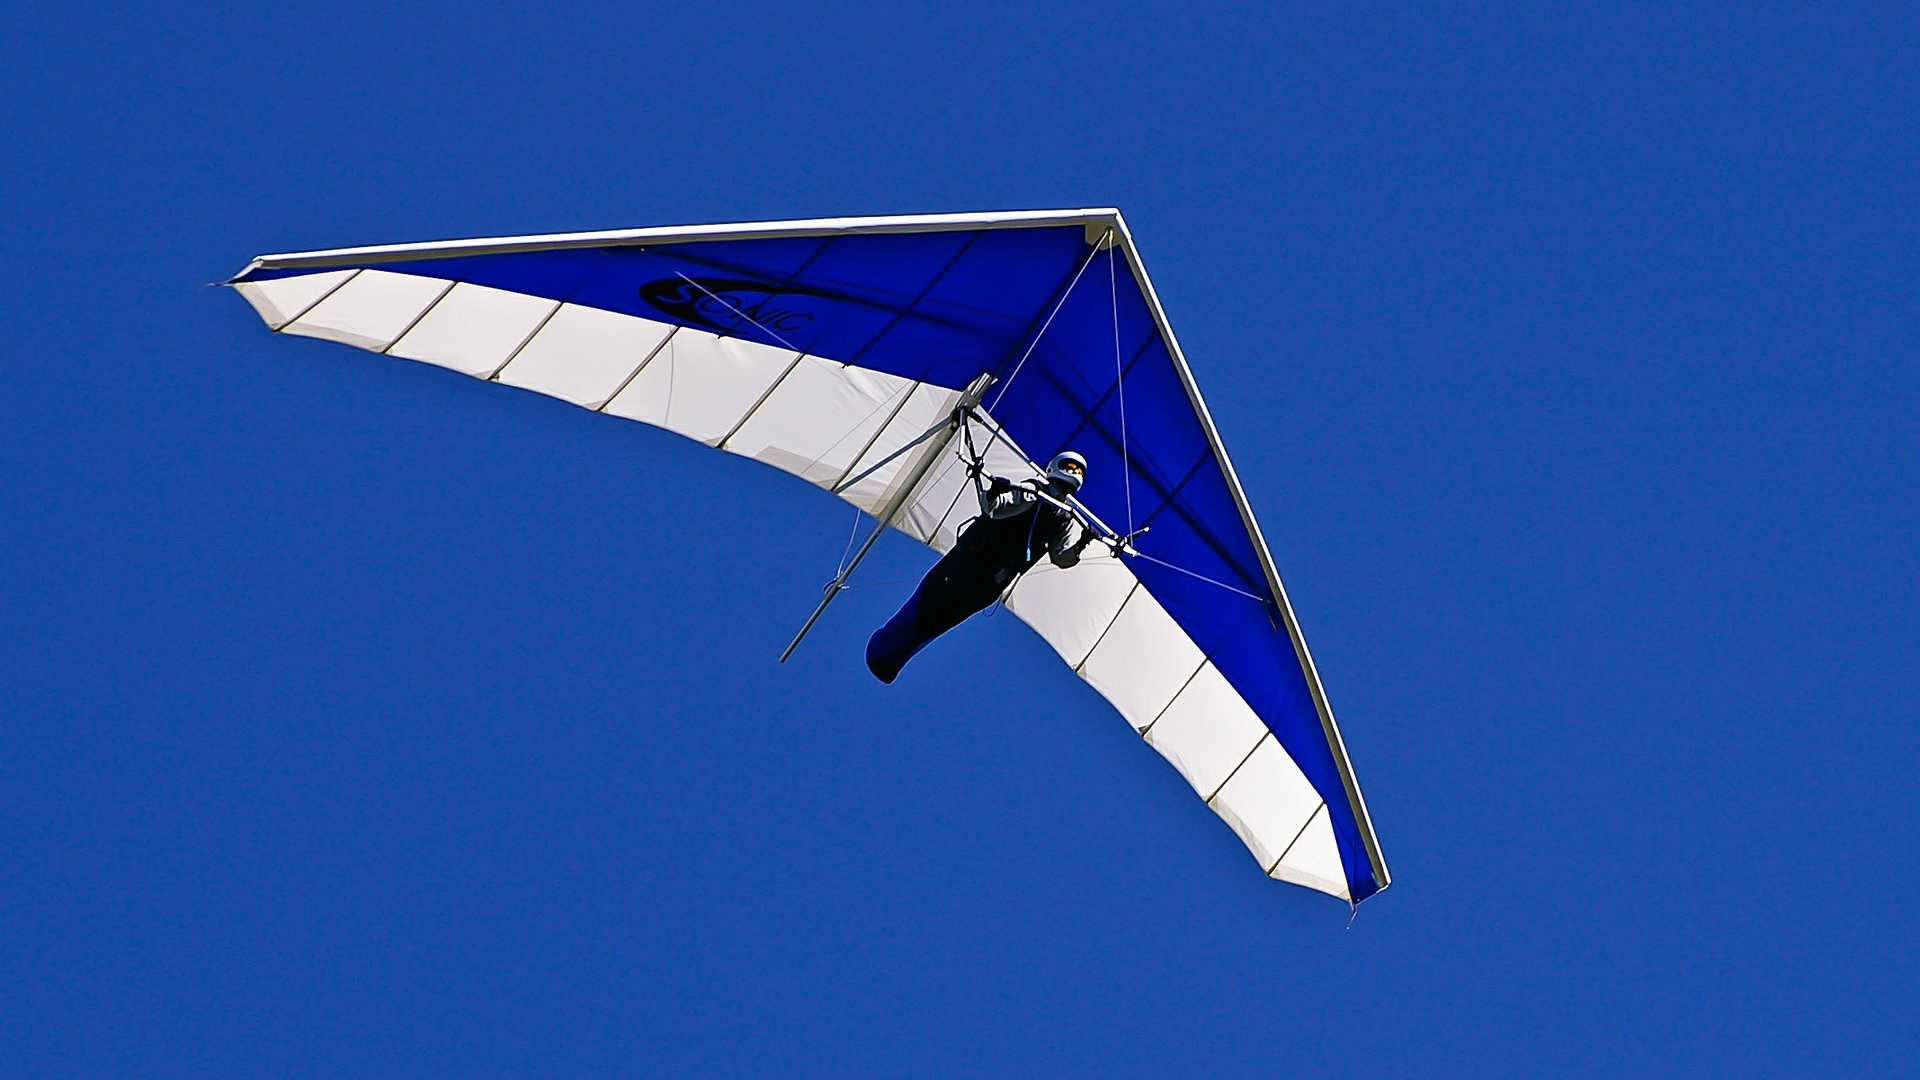 Wir sehen einen klassischen Drachen in blau-weiß. Der Pilot hängt liegend in seinem Gurtzeug, welches ihn ähnlich wie ein Schlafsack umschließt. Er steuert seinen Hanggleiter durch Gewichtsverlagerung.